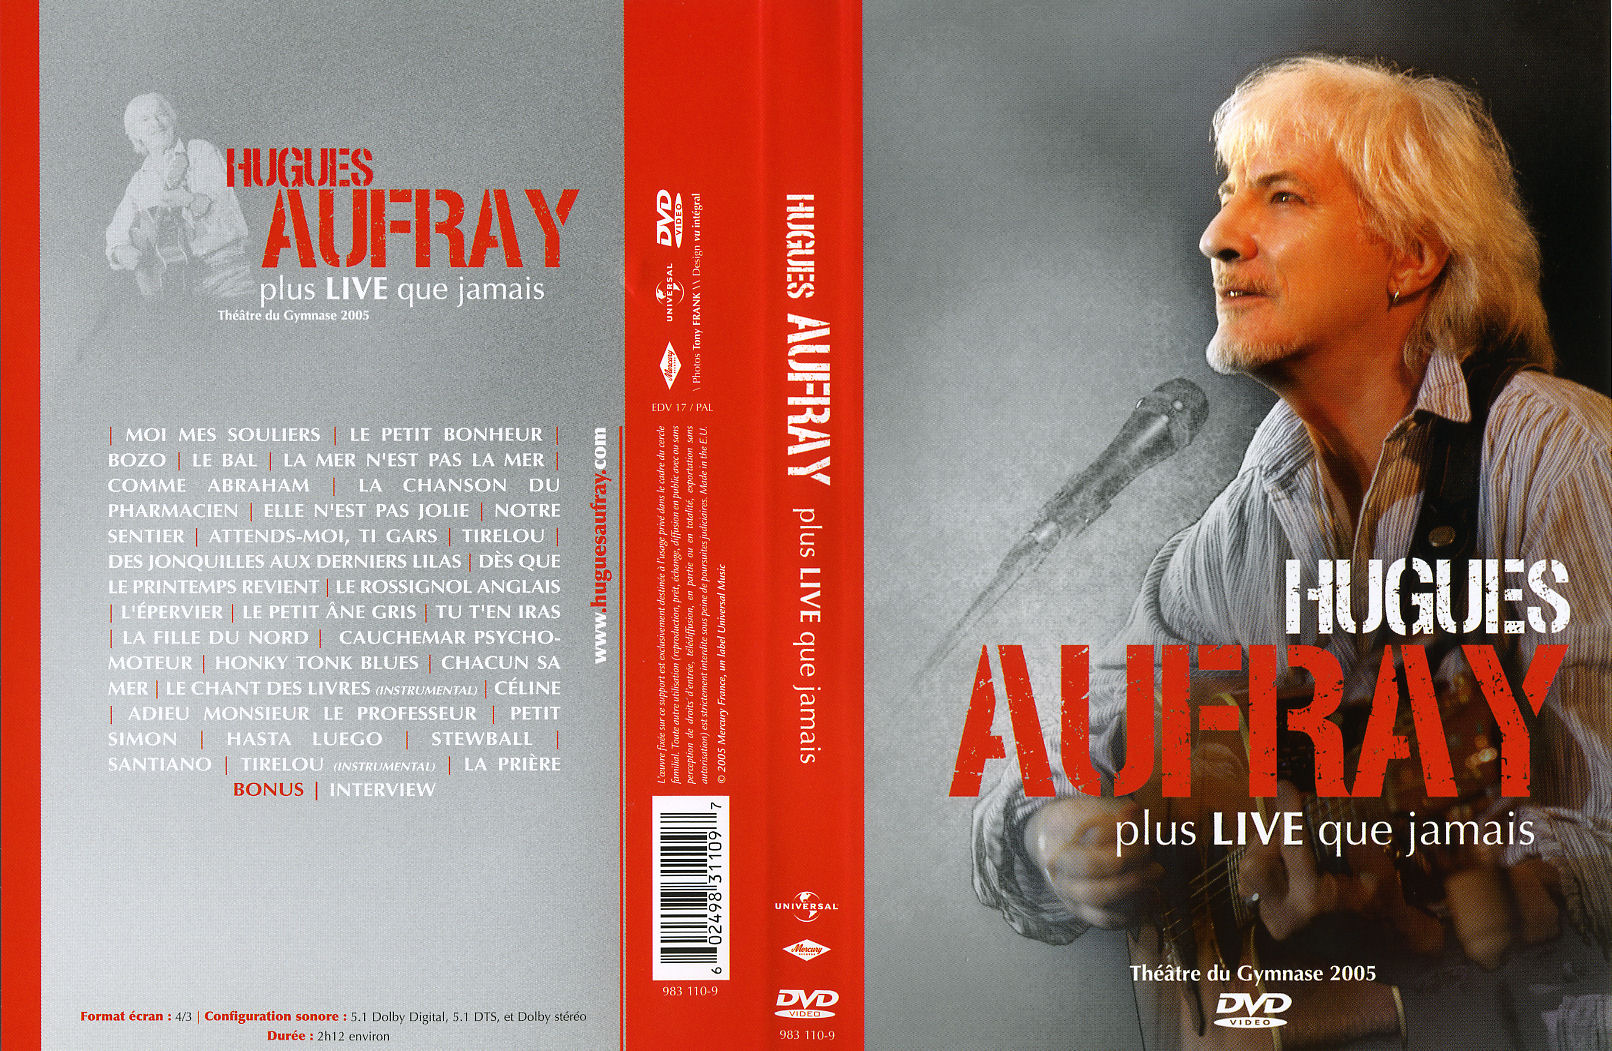 Jaquette DVD Hugues Aufray - Plus live que jamais